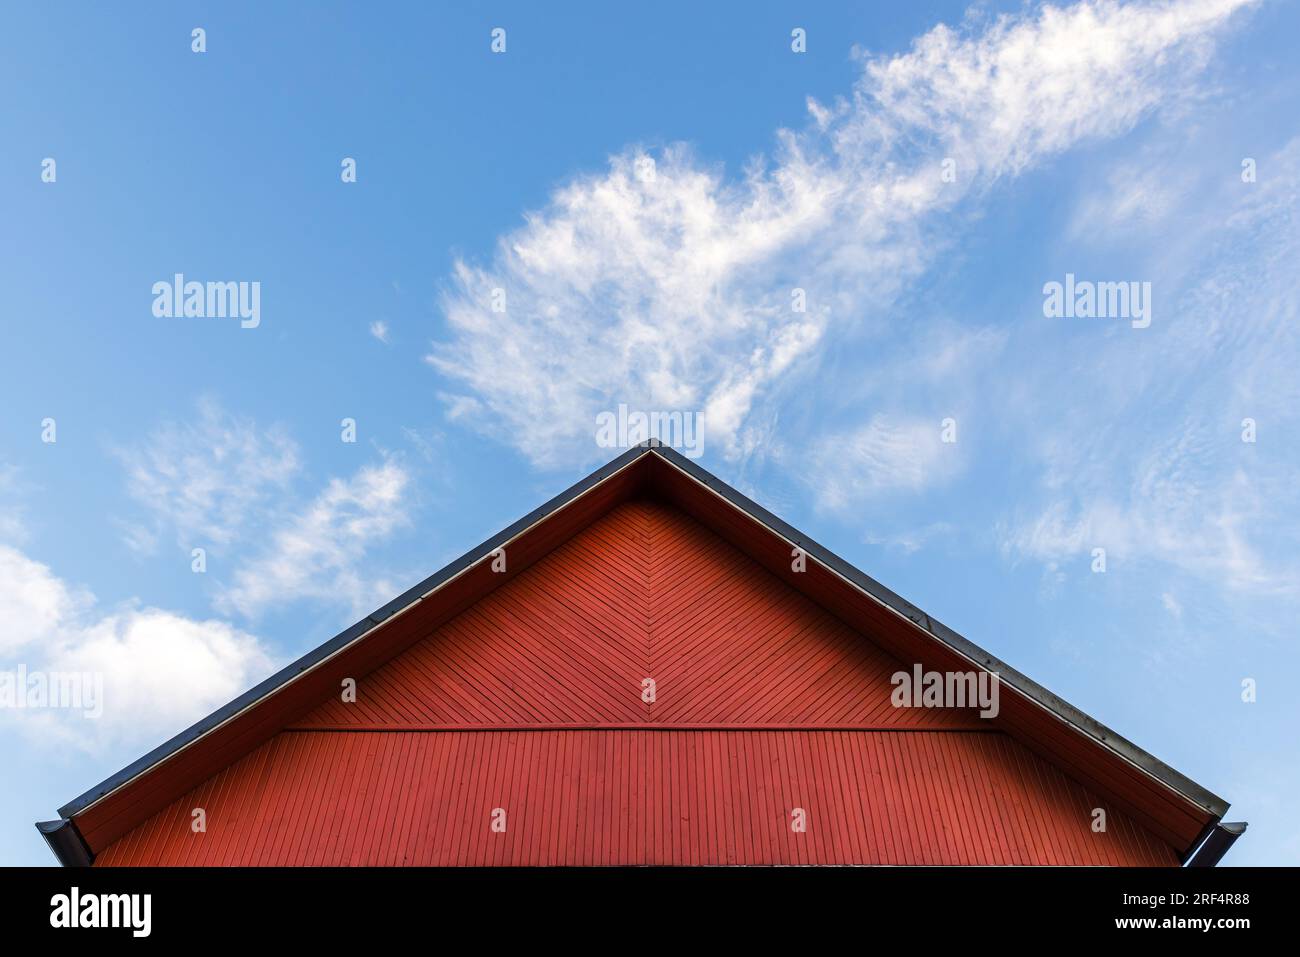 Le pignon en bois rouge est sous un ciel nuageux bleu sur un fond d'architecture scandinave rurale de jour Banque D'Images